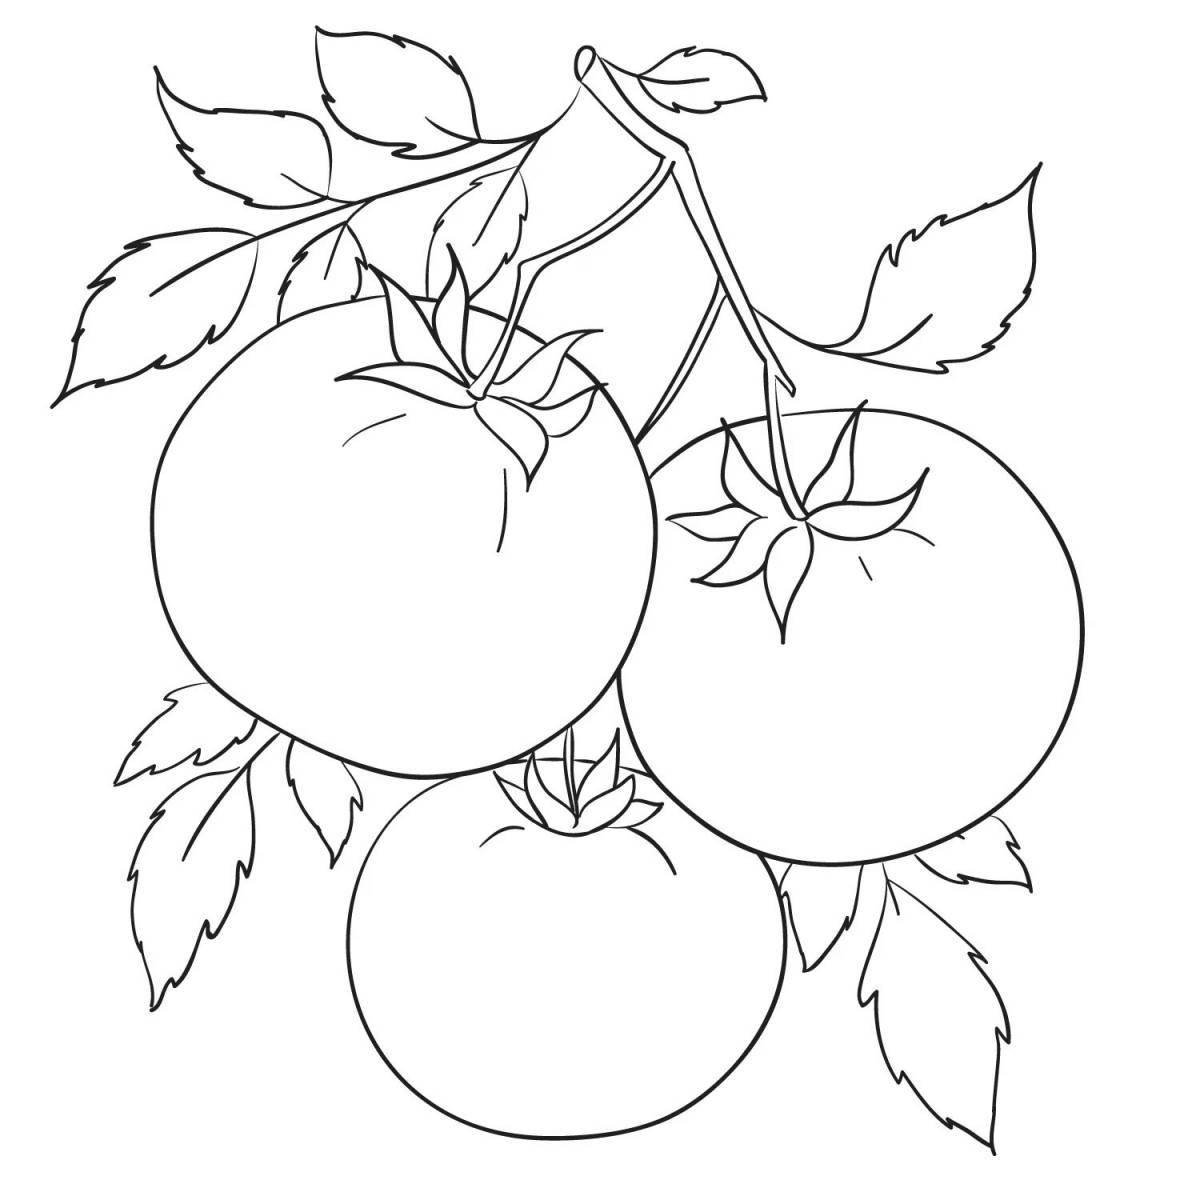 Креативная раскраска помидоров для детей 3-4 лет